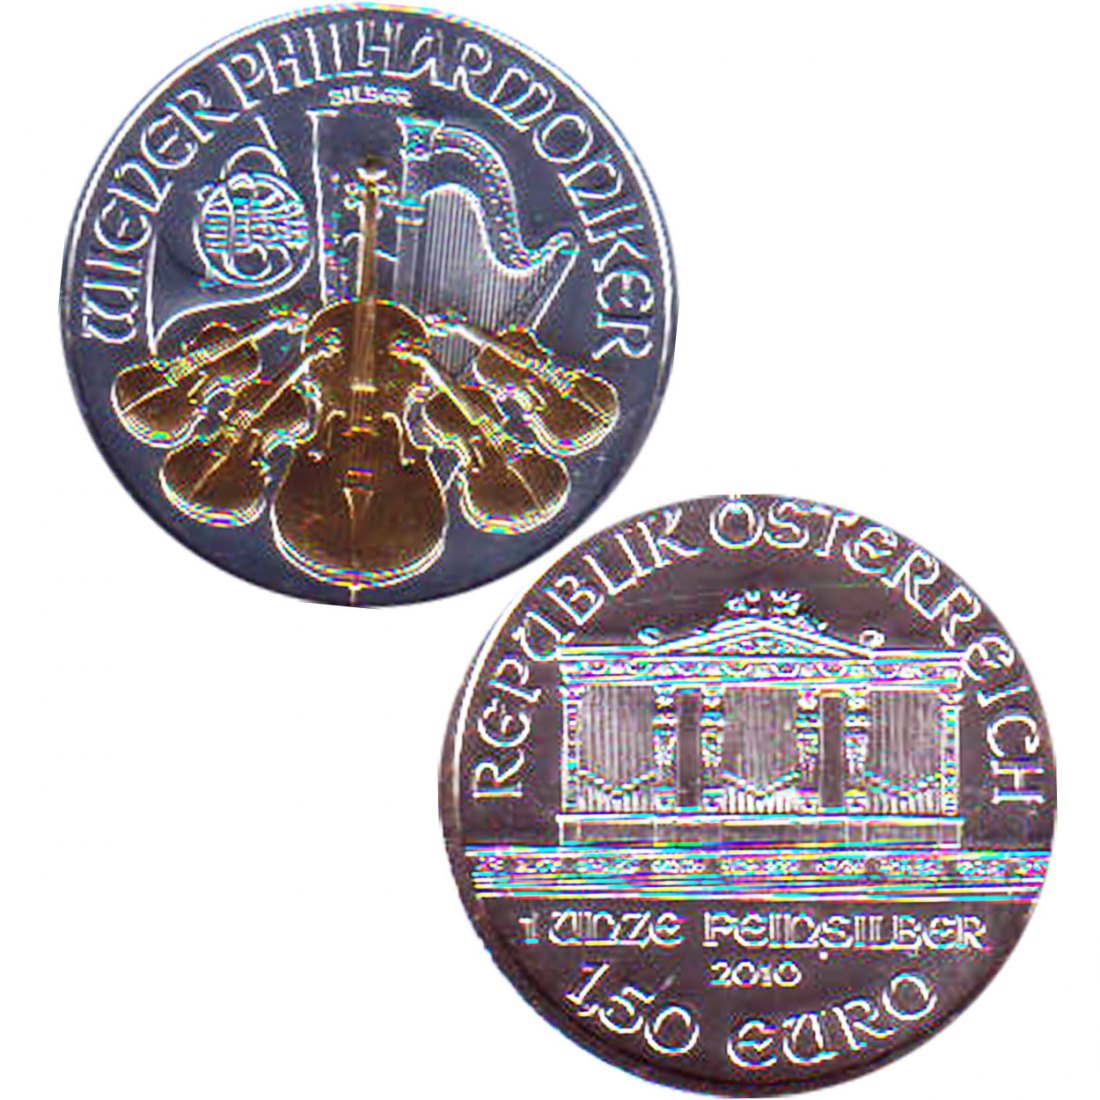  Österreich 1,50€ Silbermünze *Wiener Philharmoniker* 2010 mit 24Karat 1oz Silber nur 5.000St!   